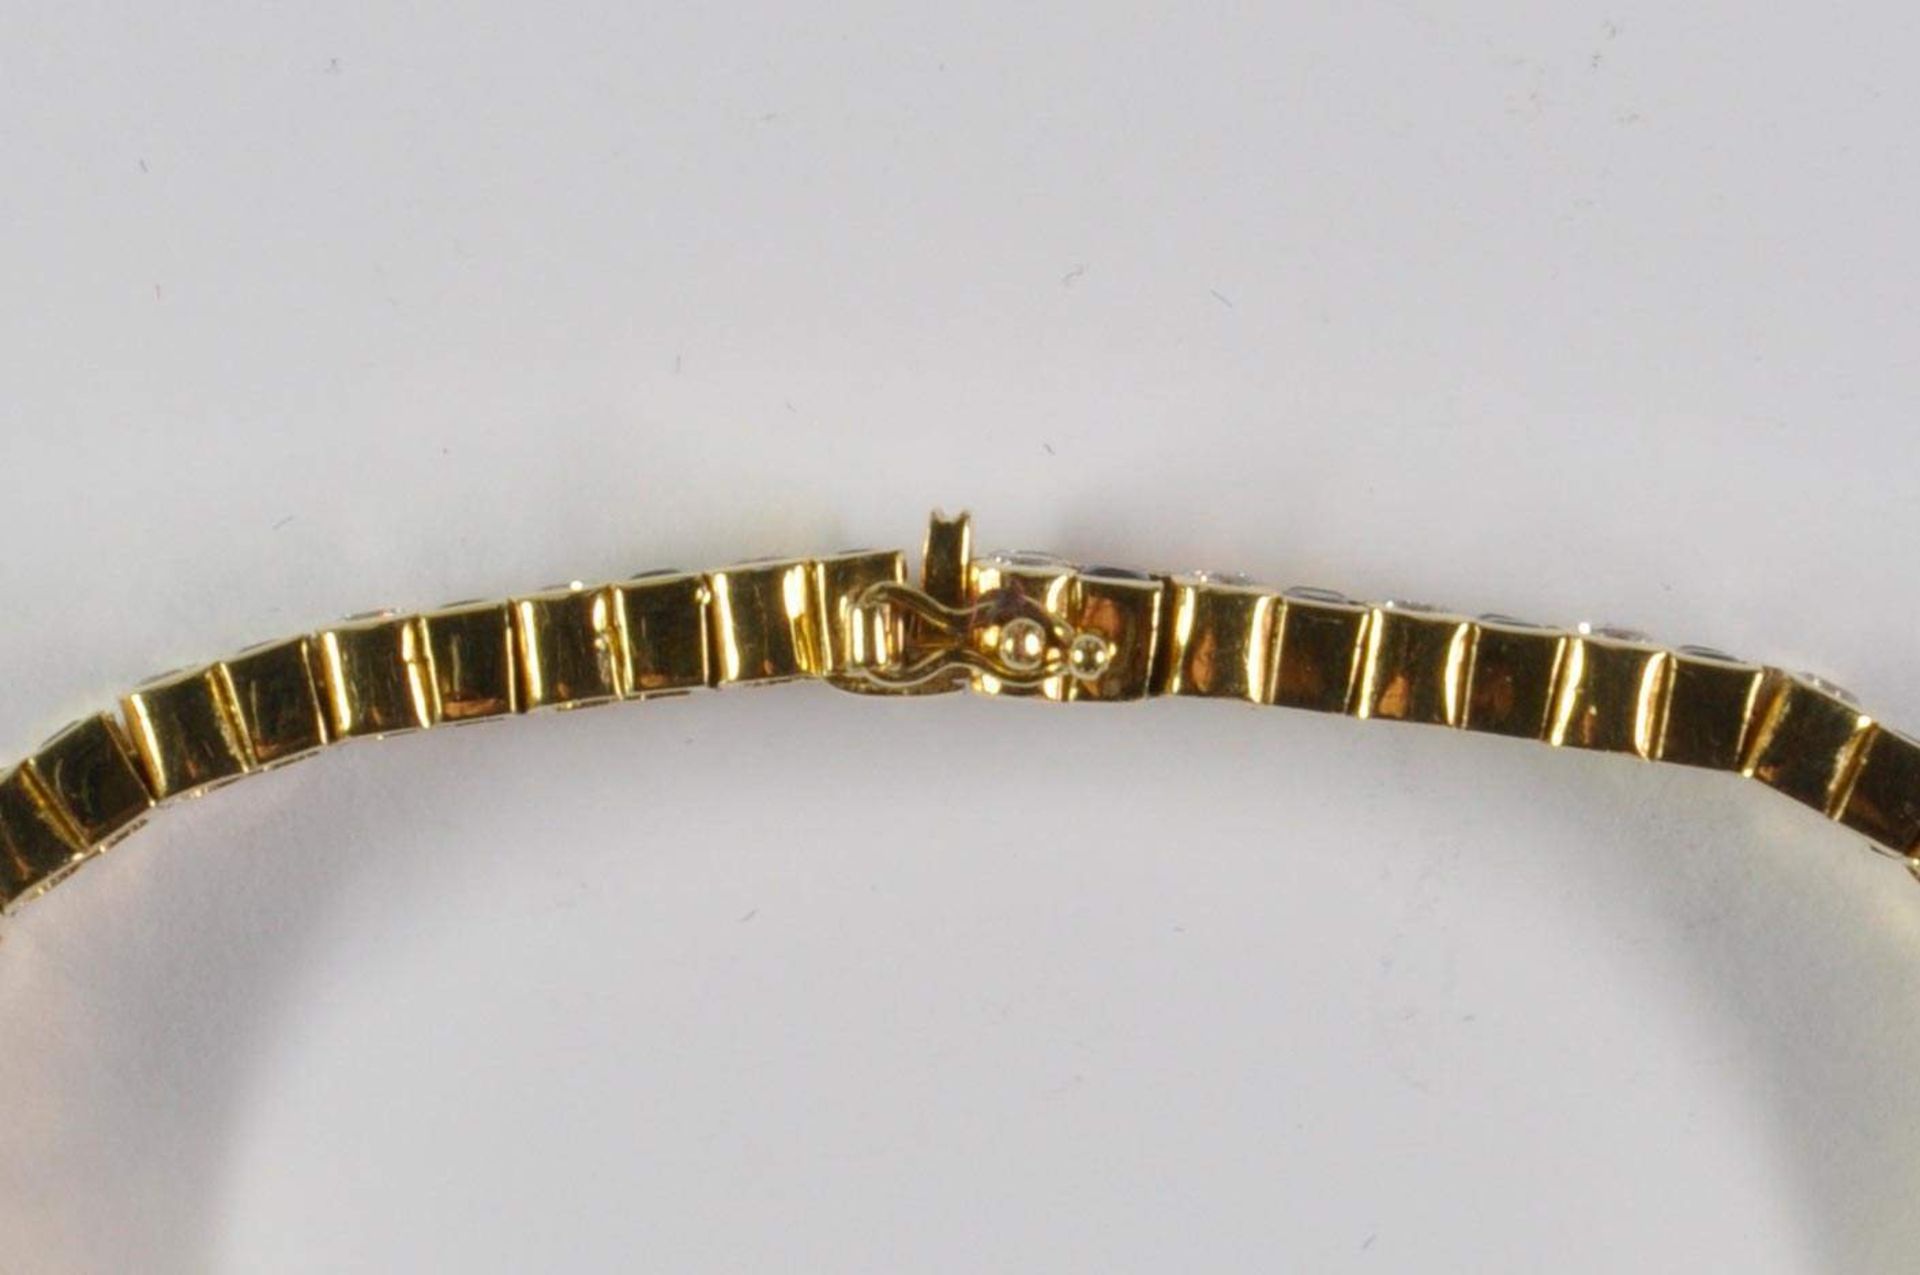 Saphir-Brillant-Armband, 750 Gelbgold, Punze, 66 Brillanten von zus. ca. 3,2ct, 64 Saphiren von zus. - Bild 16 aus 20